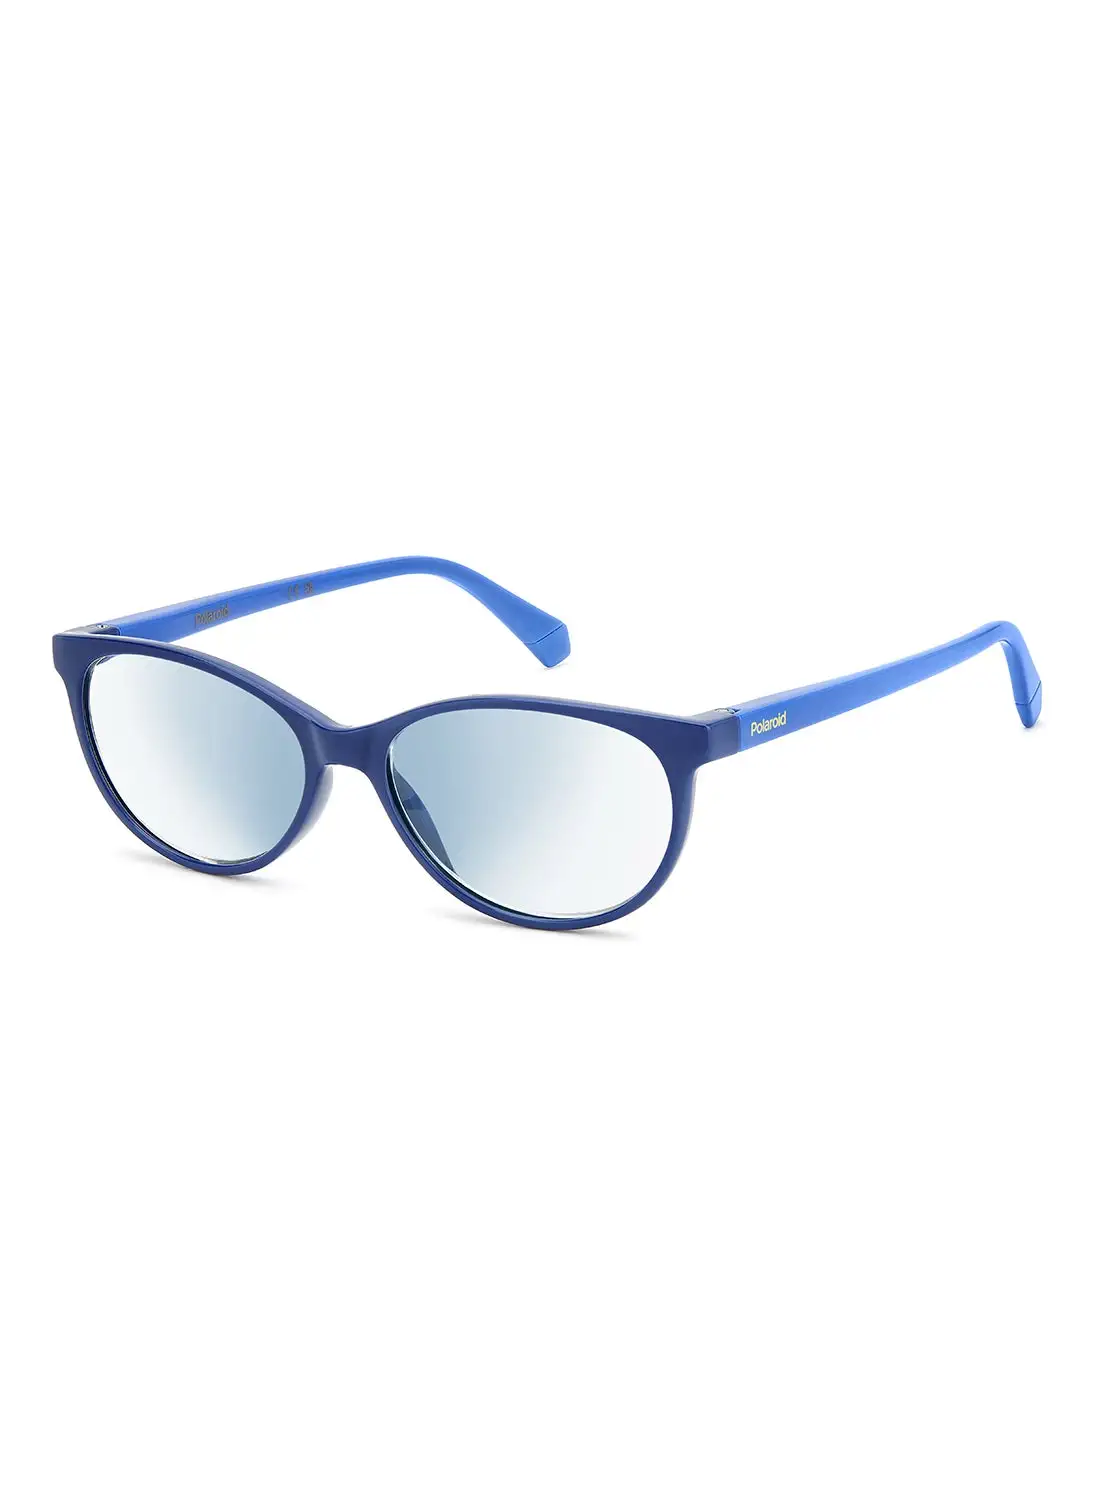 Polaroid Women's Reading Glasses - Pld 0036/R/Bb Blue 53 - Lens Size: 53 Mm